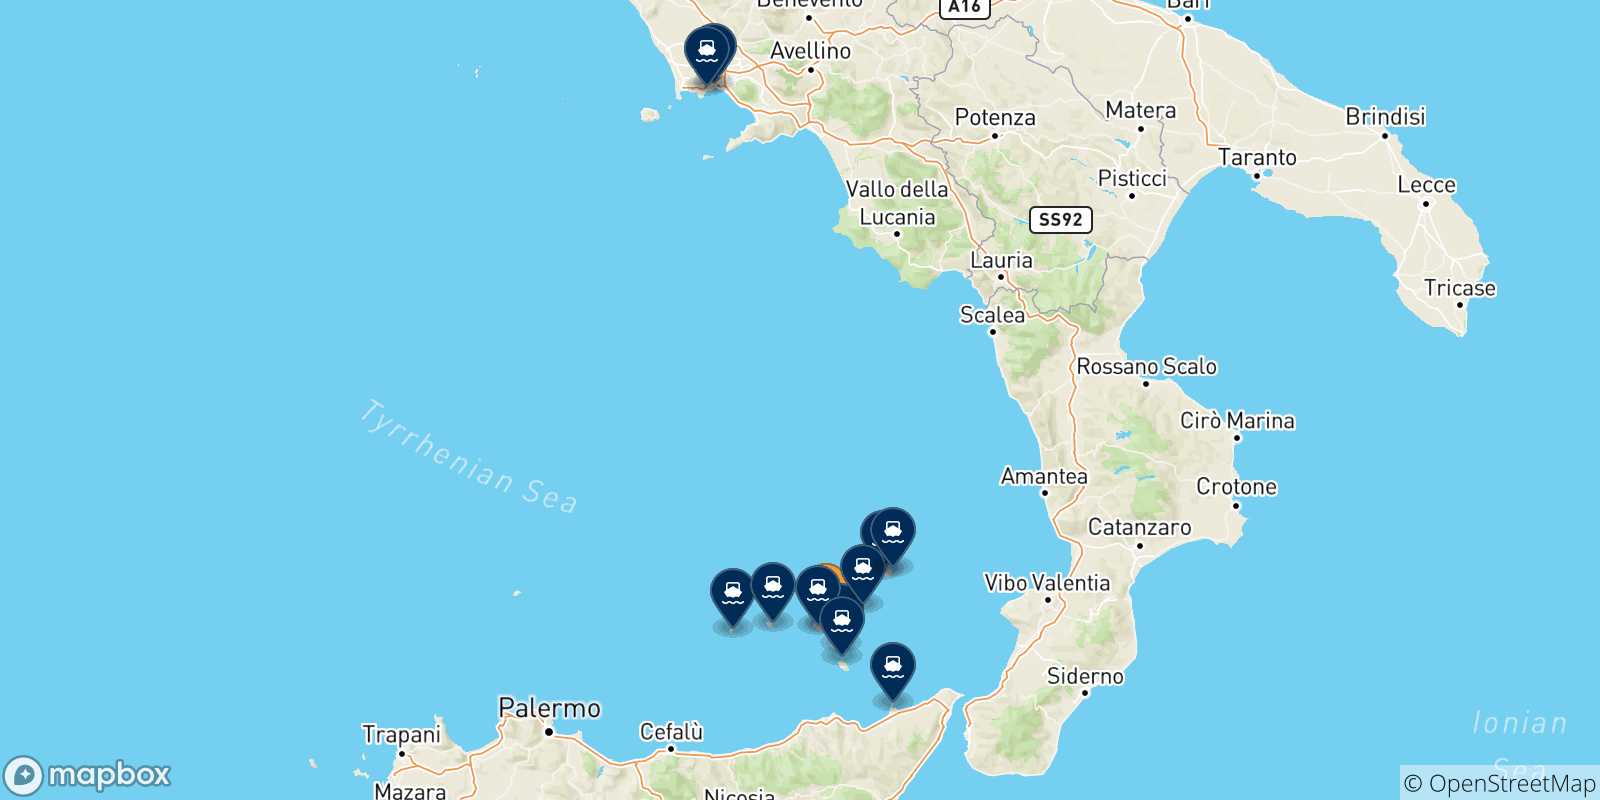 Mappa delle possibili rotte tra Santa Marina (Salina) e l'Italia